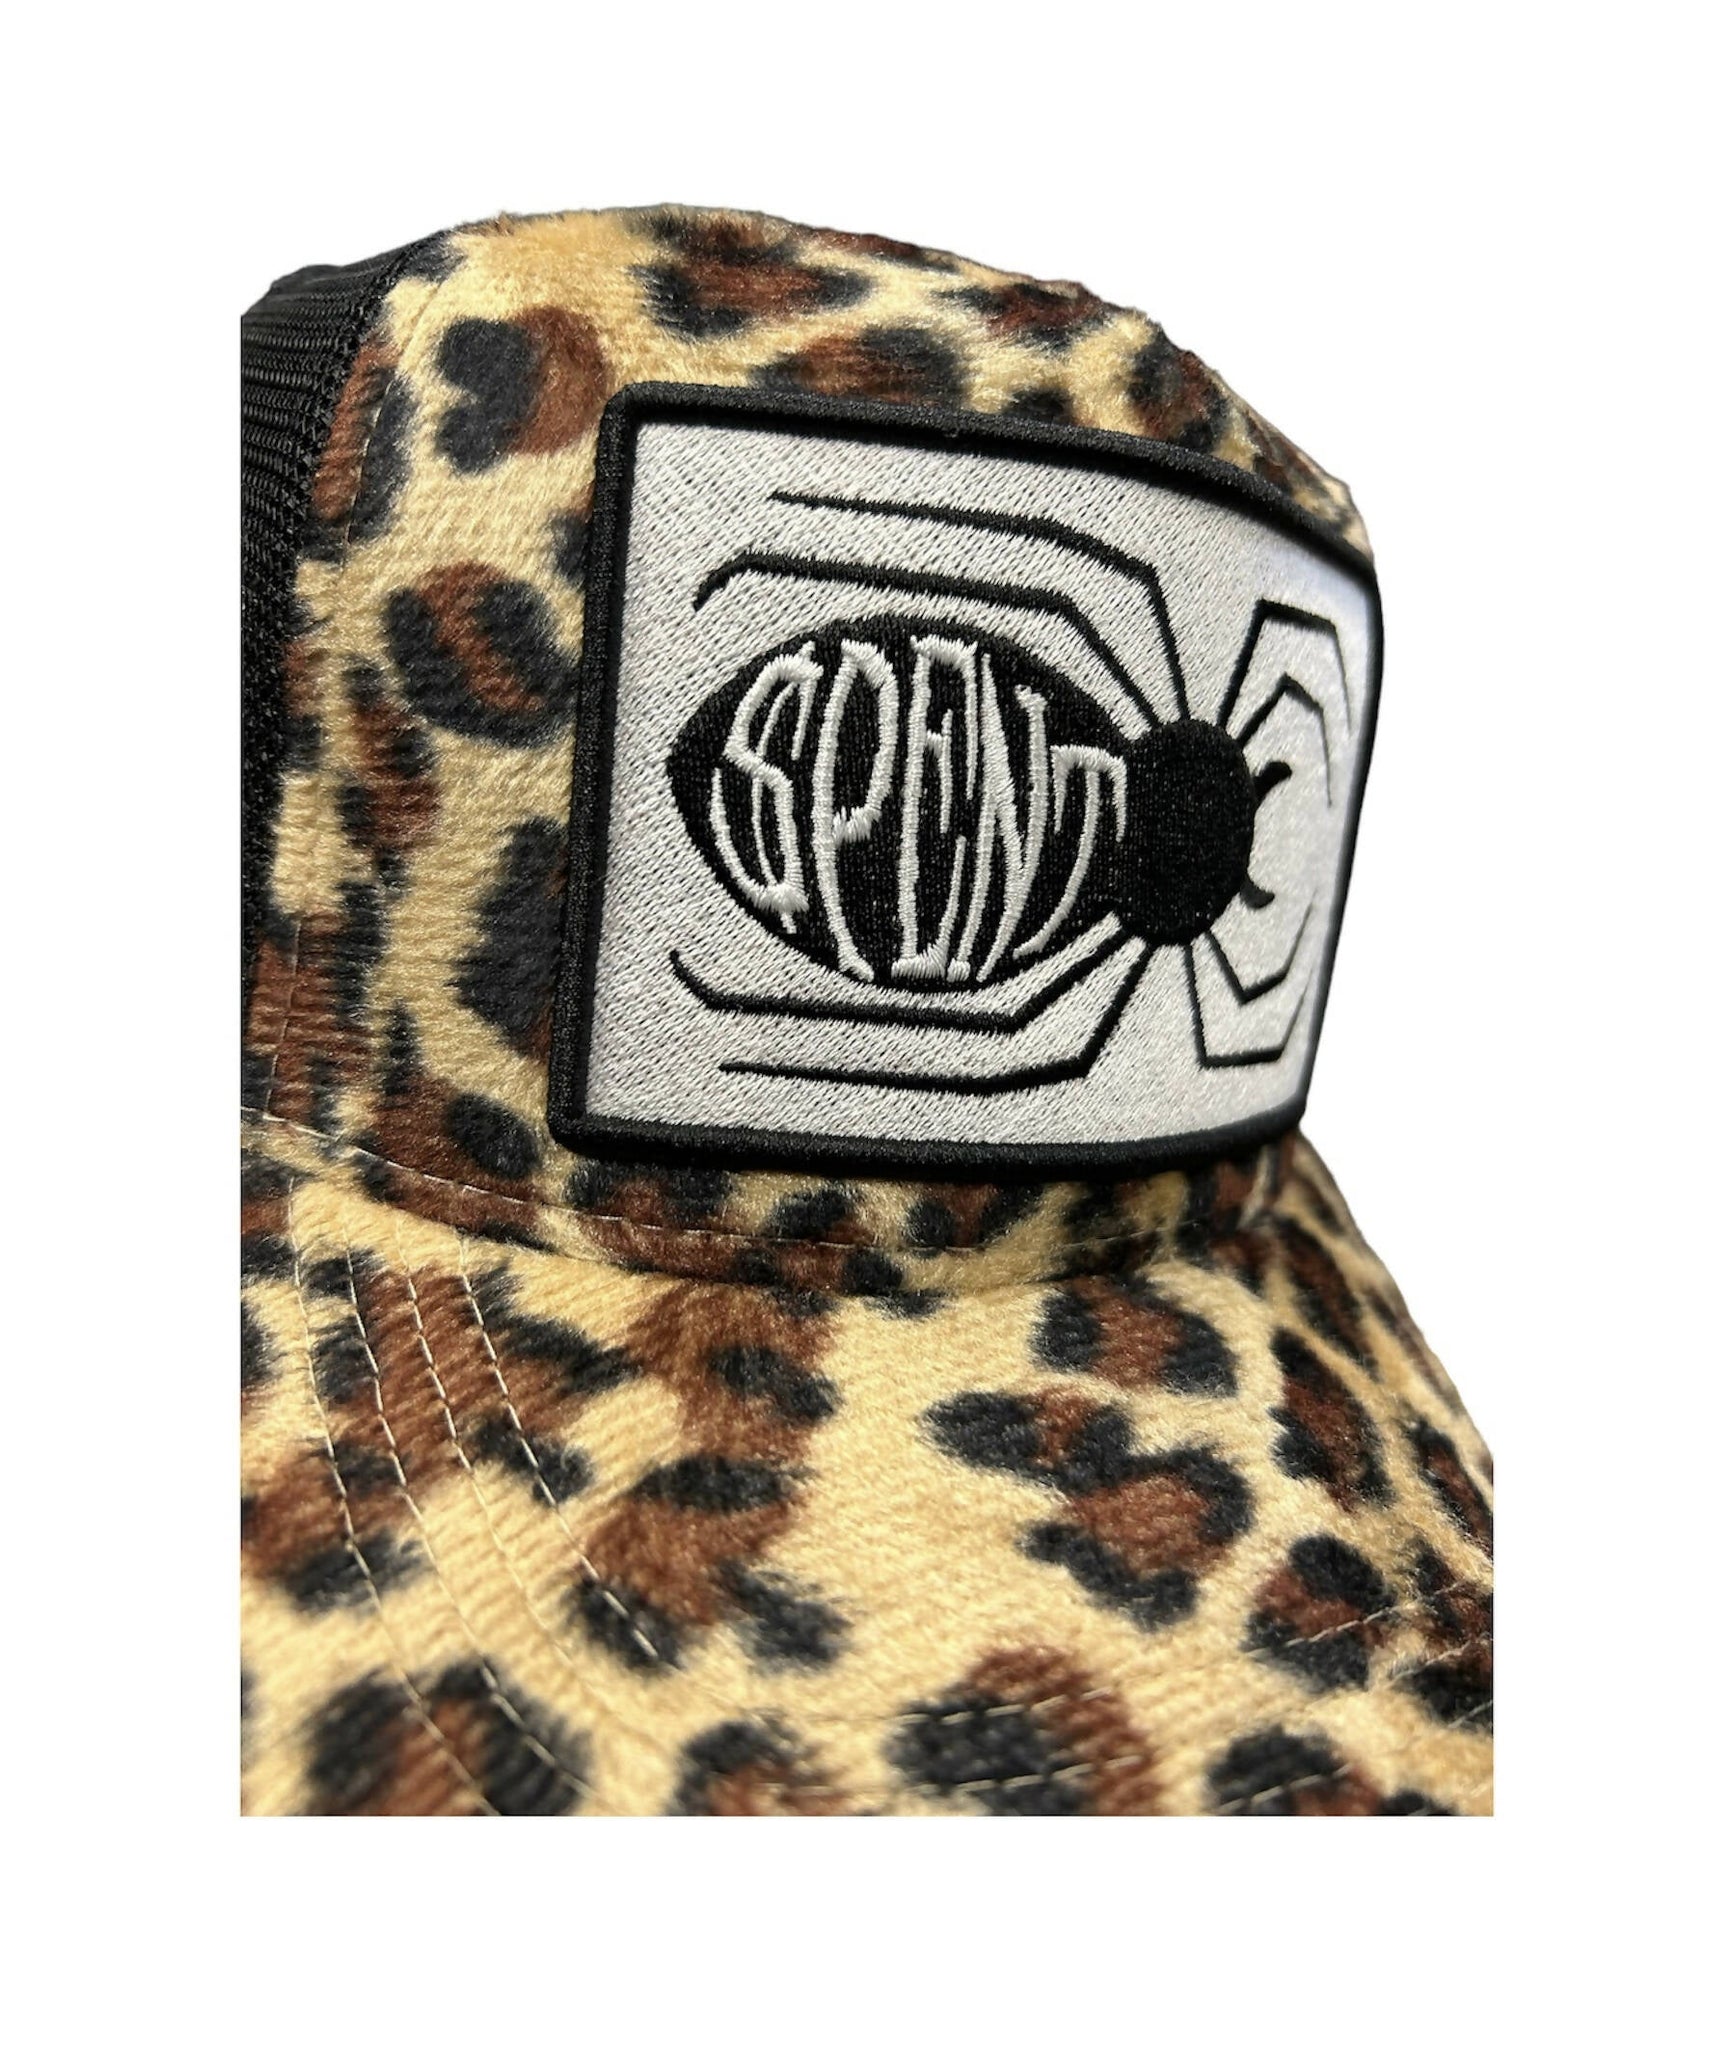 “Leopard $pider” Trucker hat